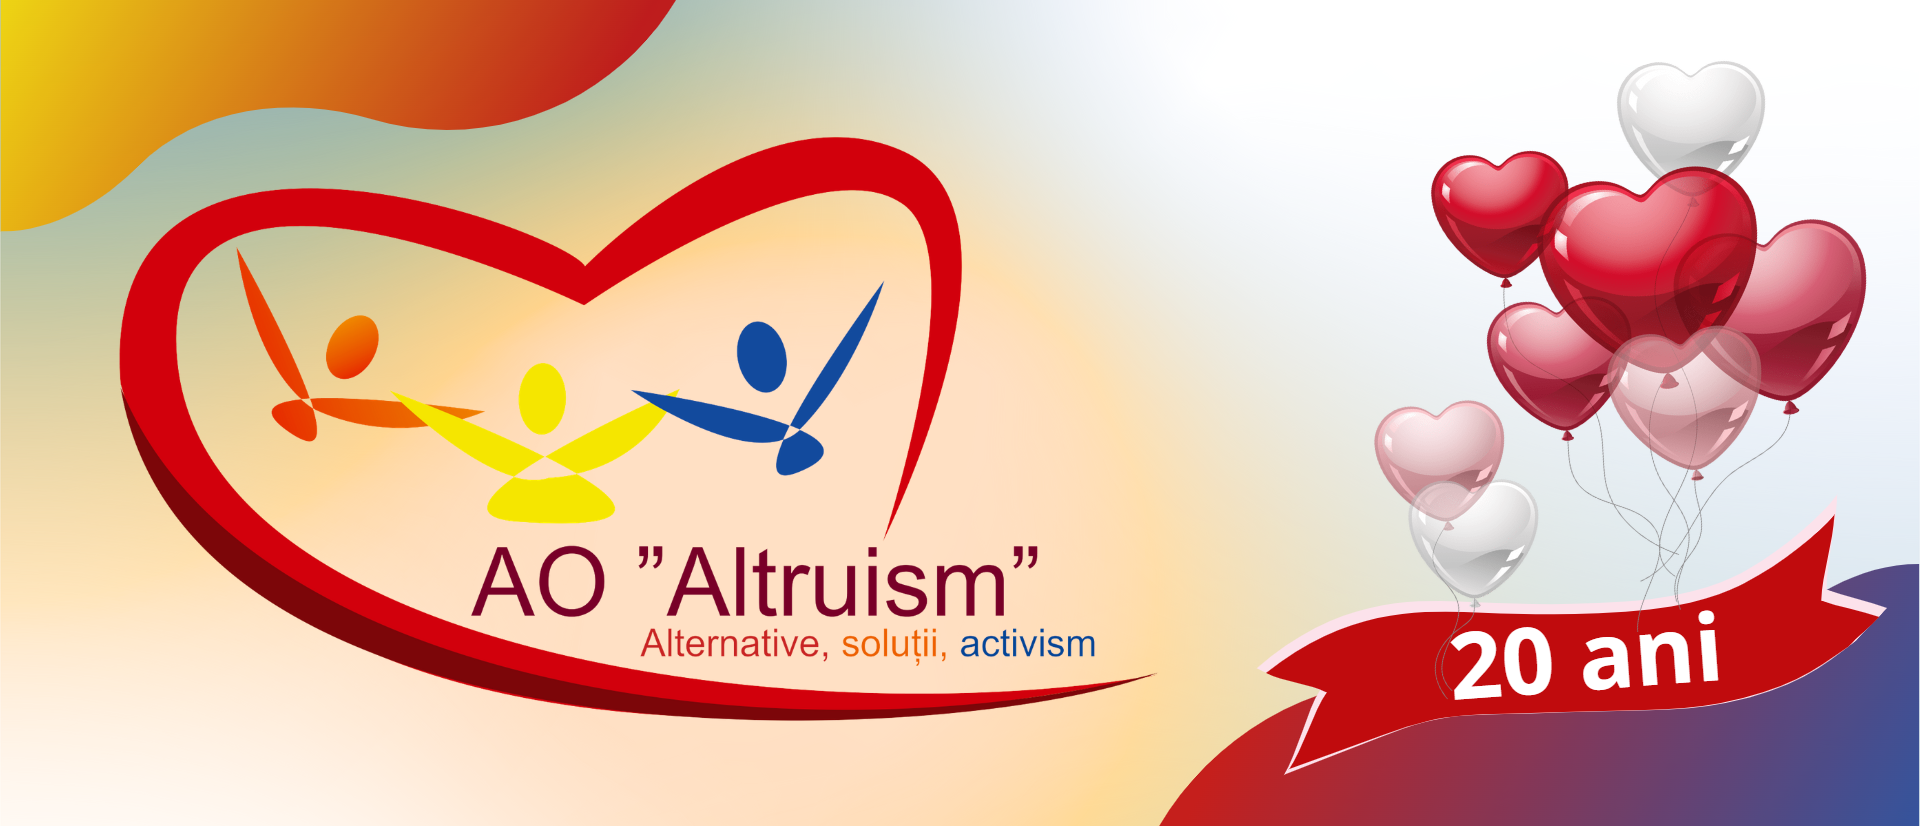 altruism